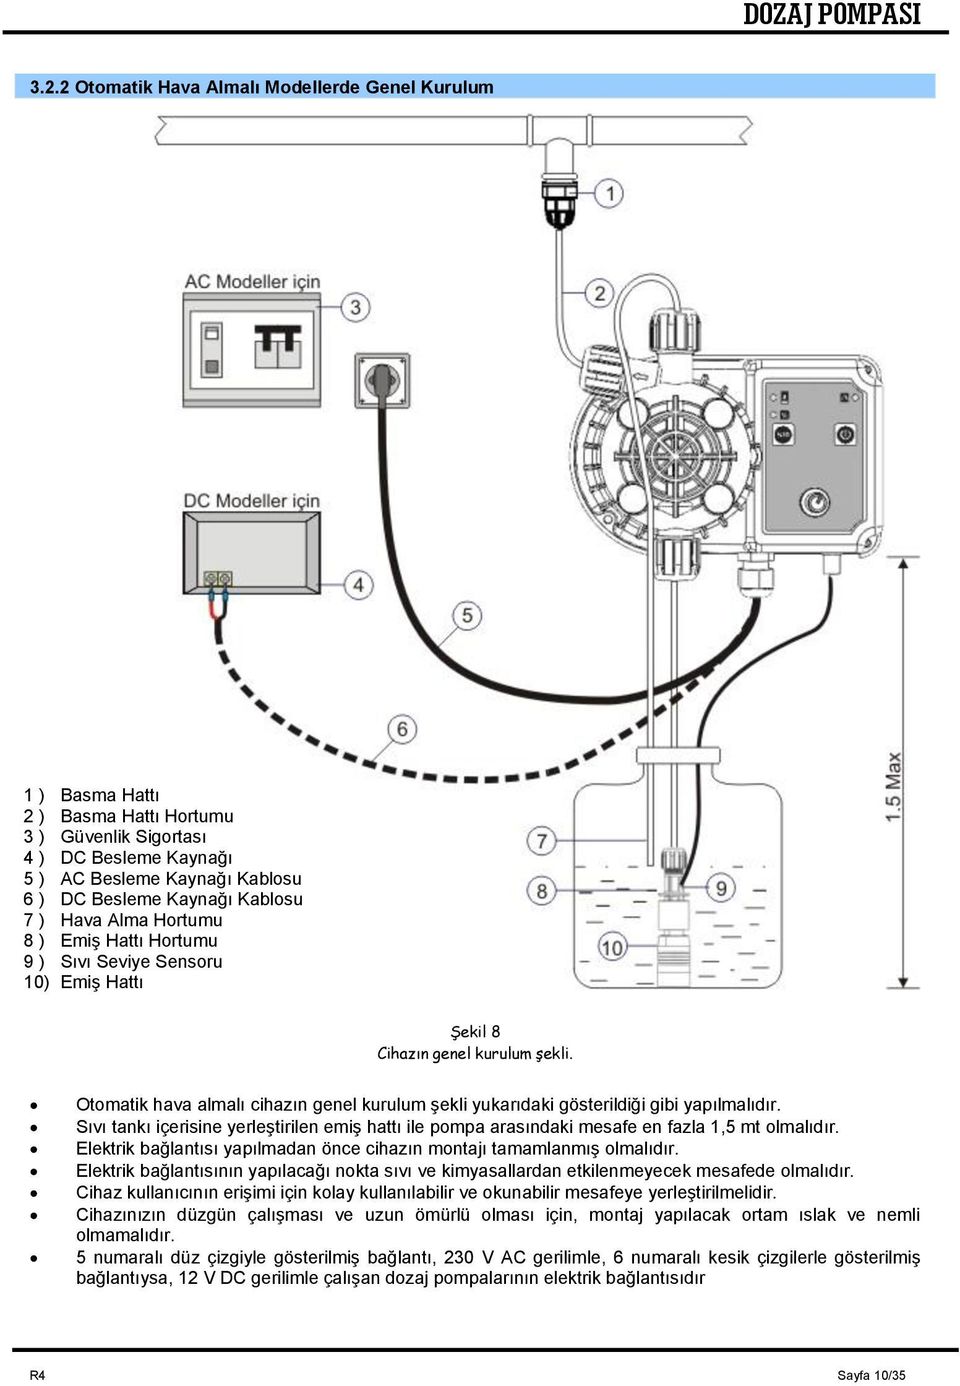 Otomatik hava almalı cihazın genel kurulum şekli yukarıdaki gösterildiği gibi yapılmalıdır. Sıvı tankı içerisine yerleştirilen emiş hattı ile pompa arasındaki mesafe en fazla 1,5 mt olmalıdır.